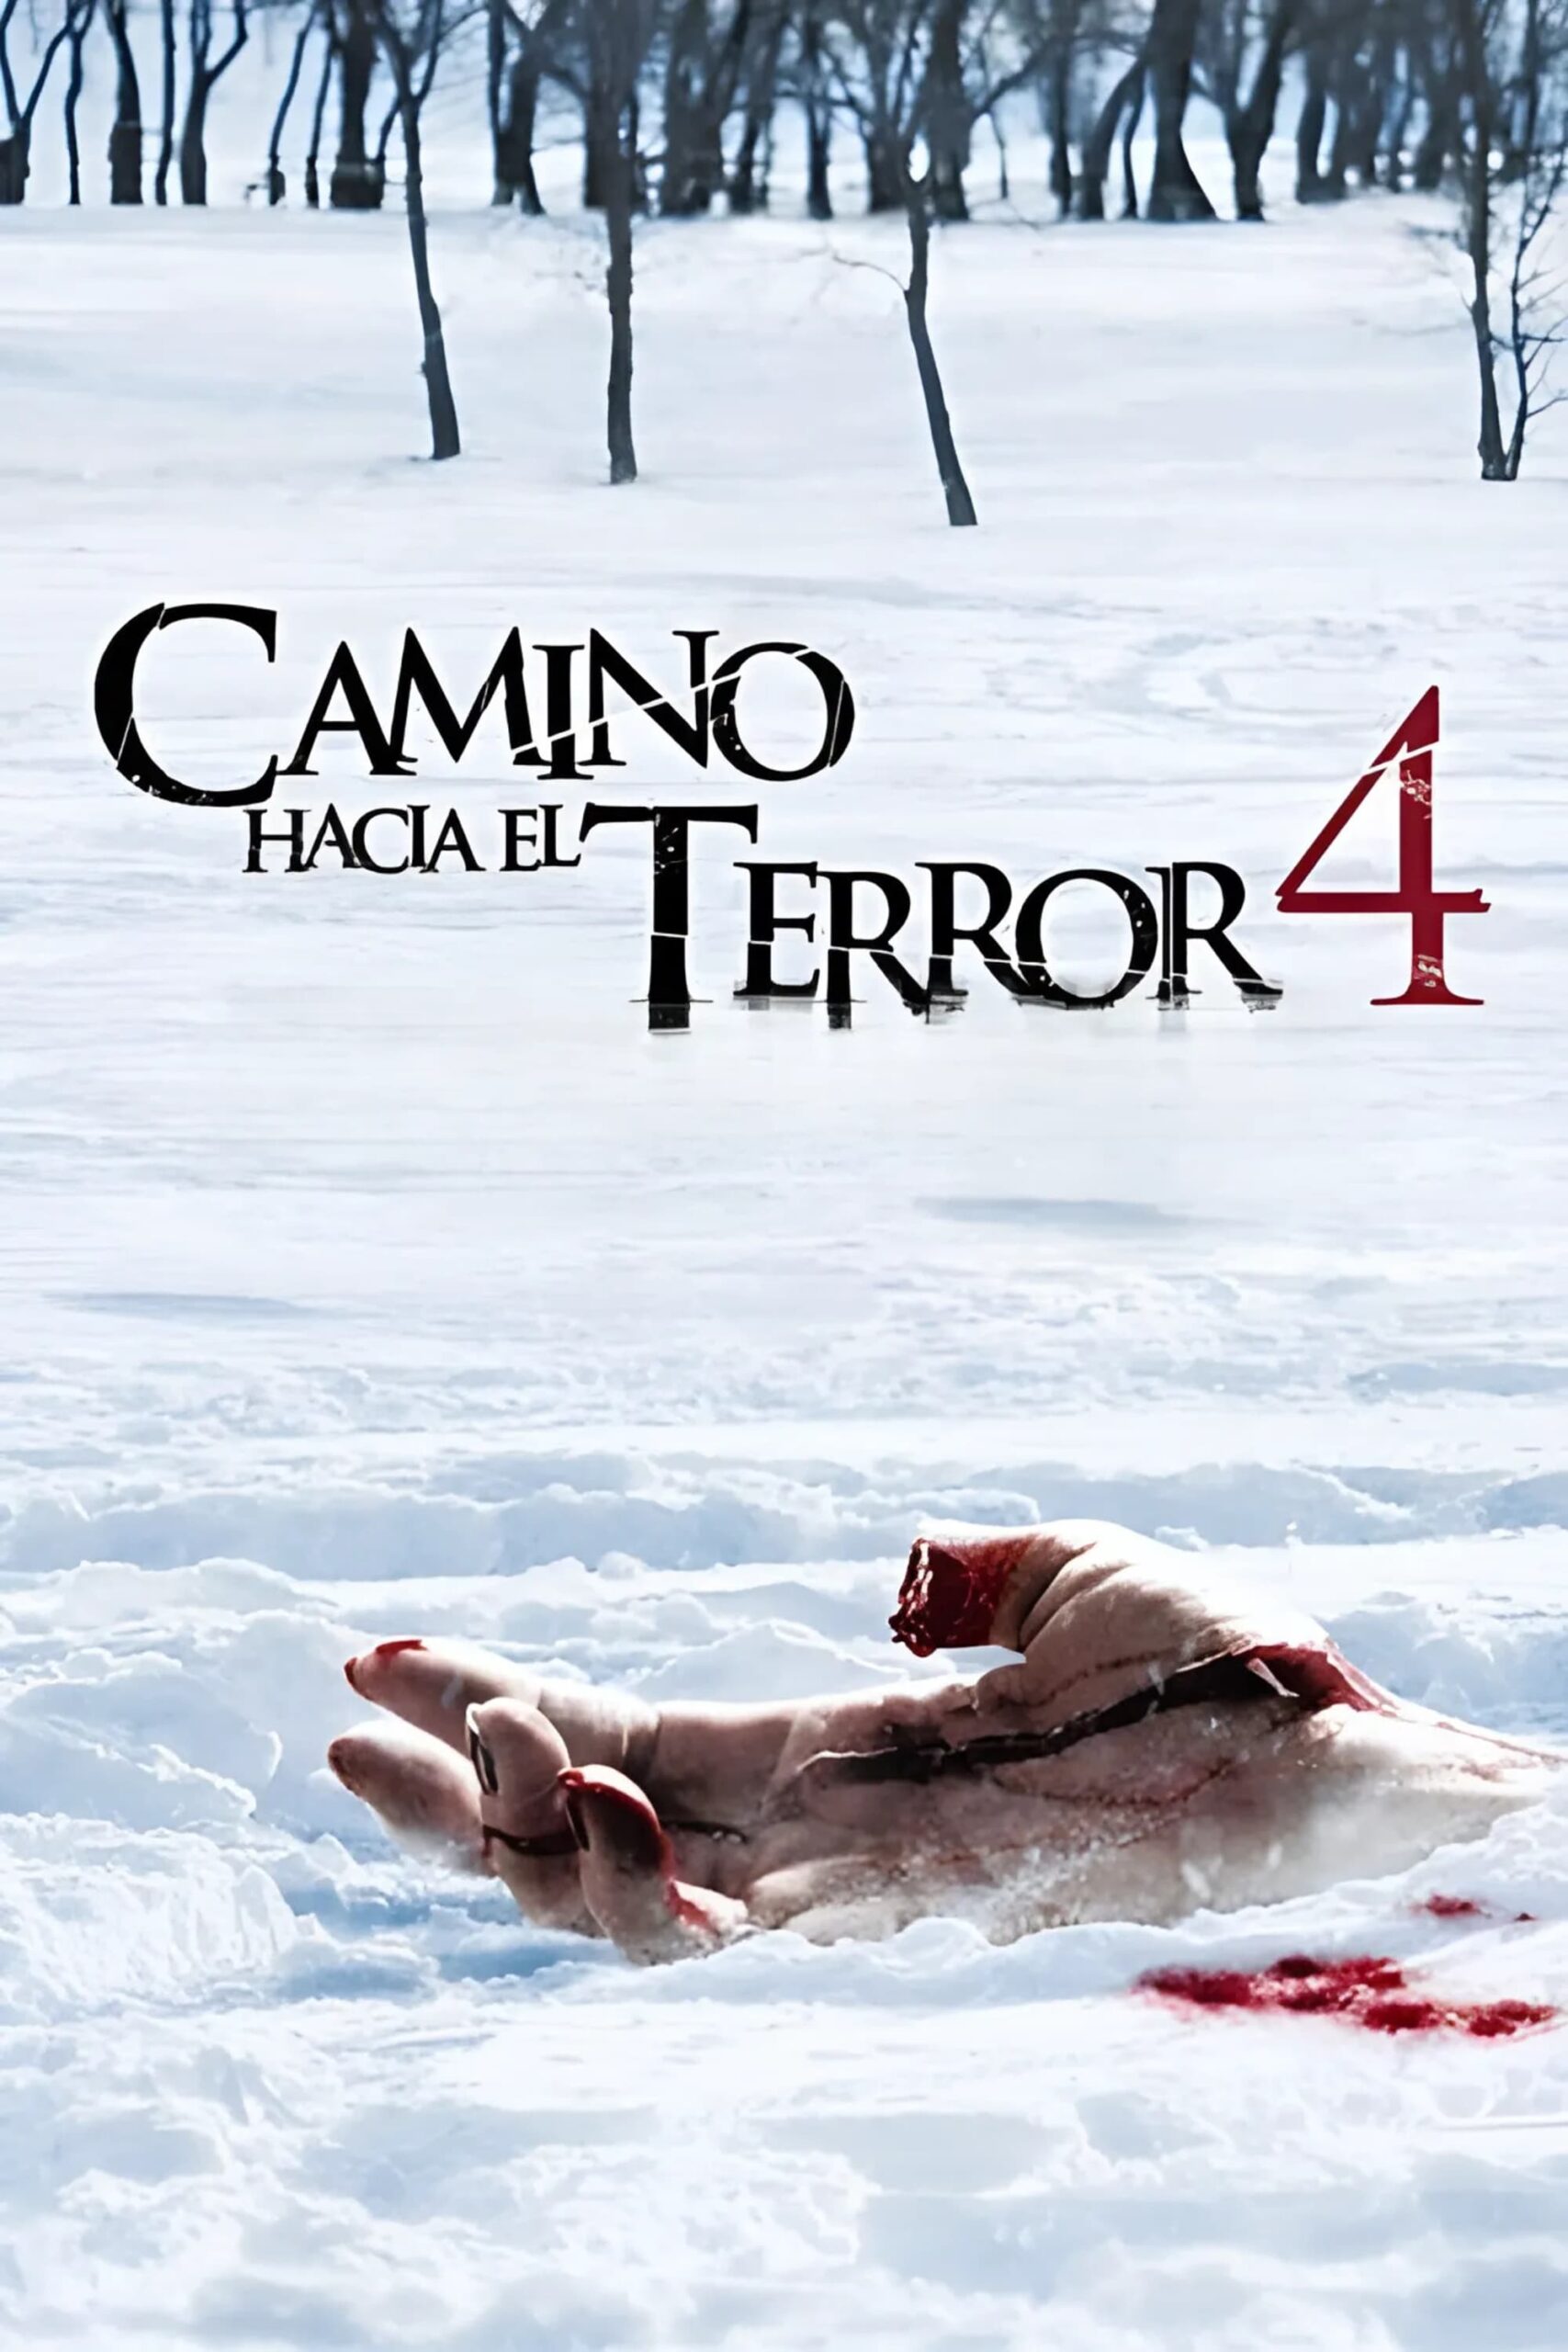 Camino Hacia El Terror 4: El origen (2011)